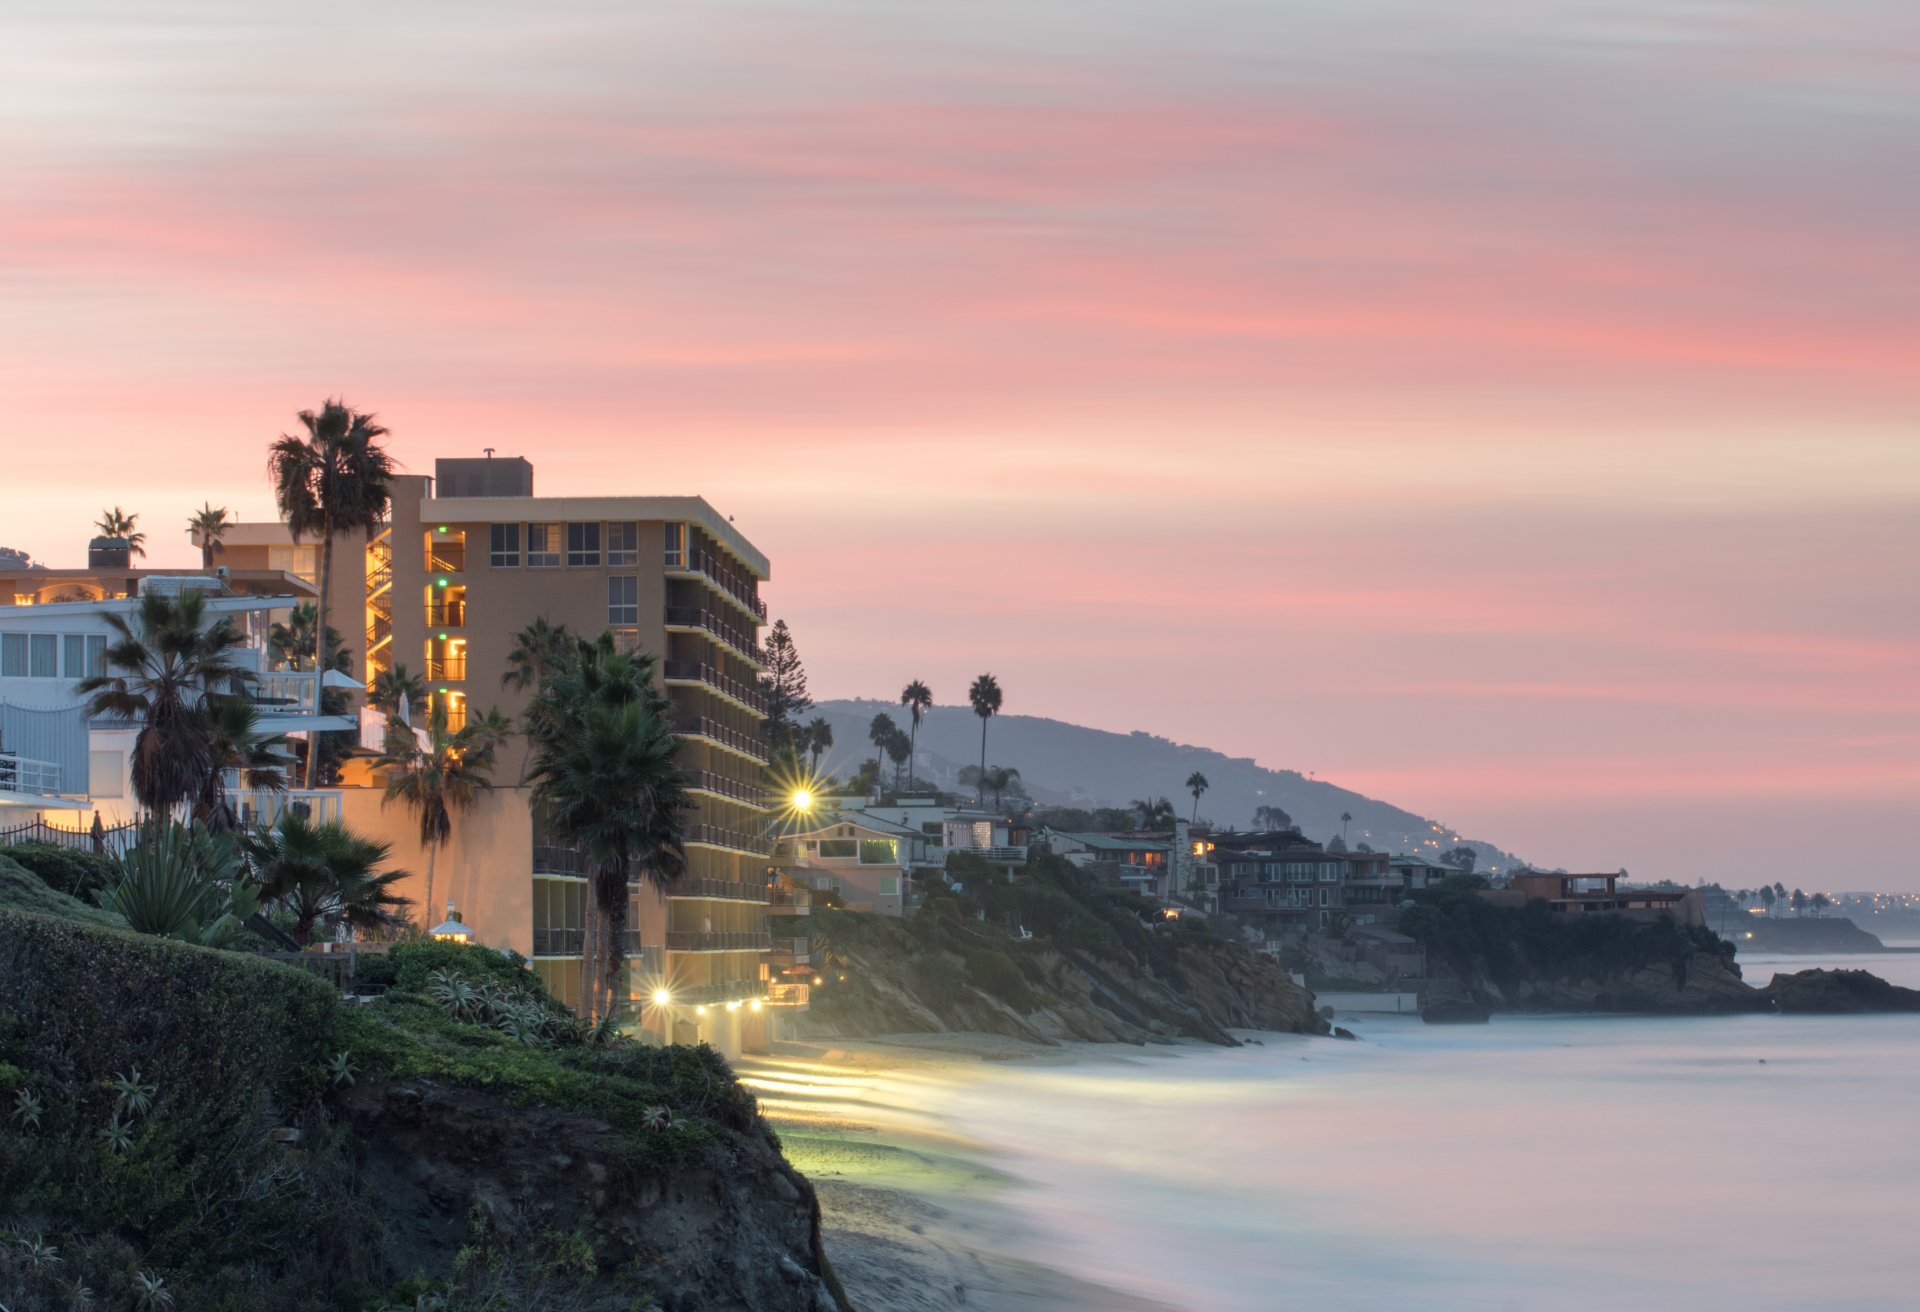 Landscape view of cliffs and beach at dawn, Laguna Beach, California, USA